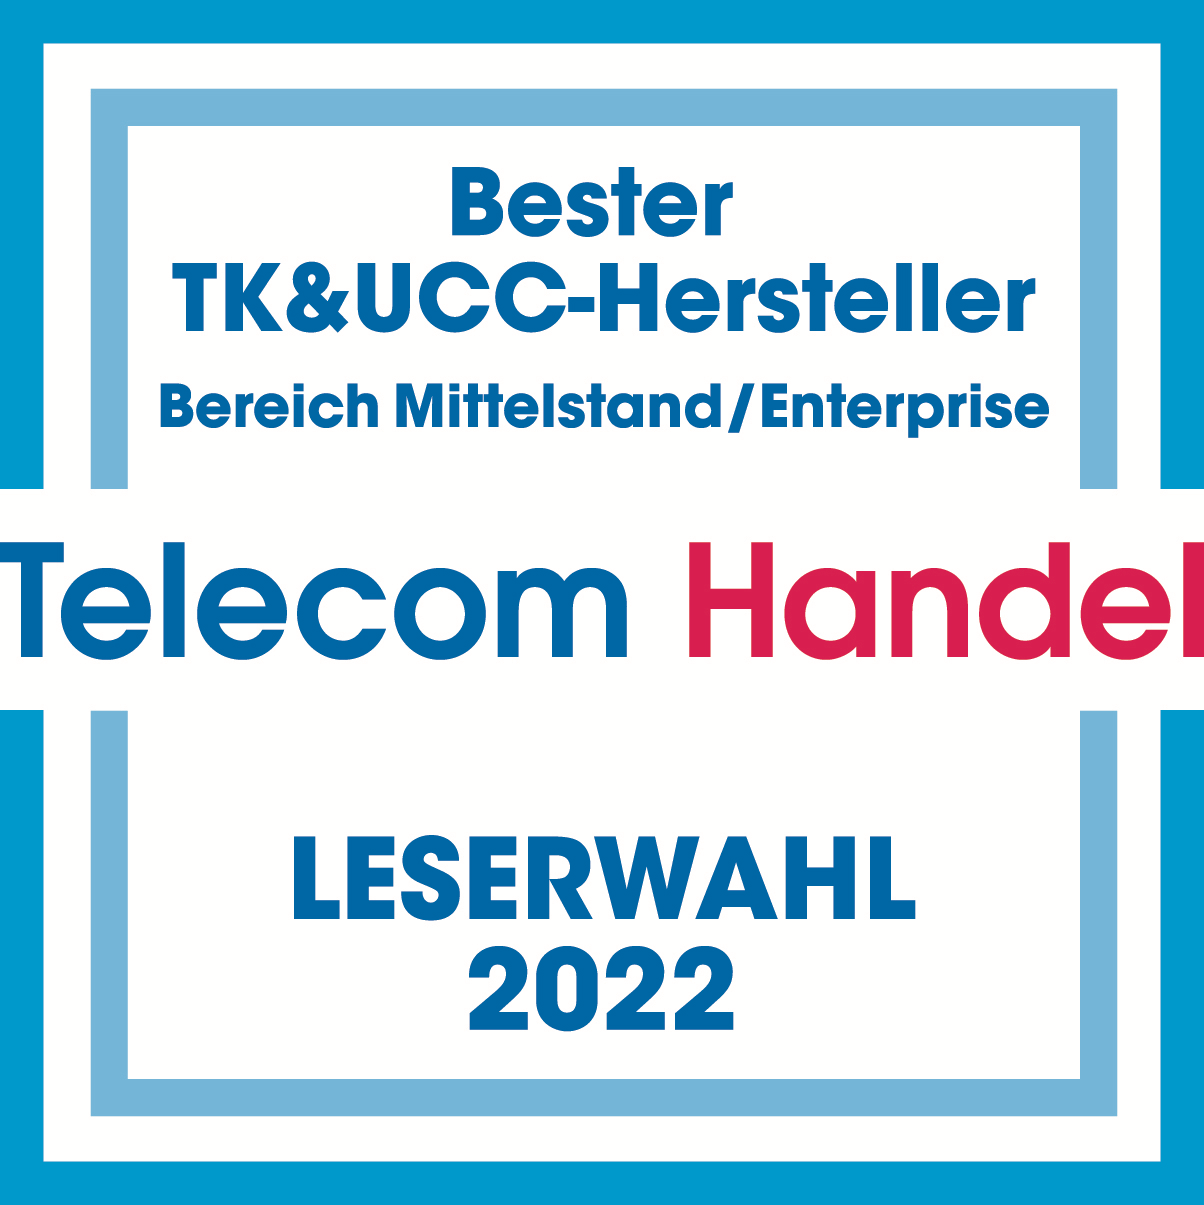 telekom handel leserwahl bester tk & ucc-hersteller 2022